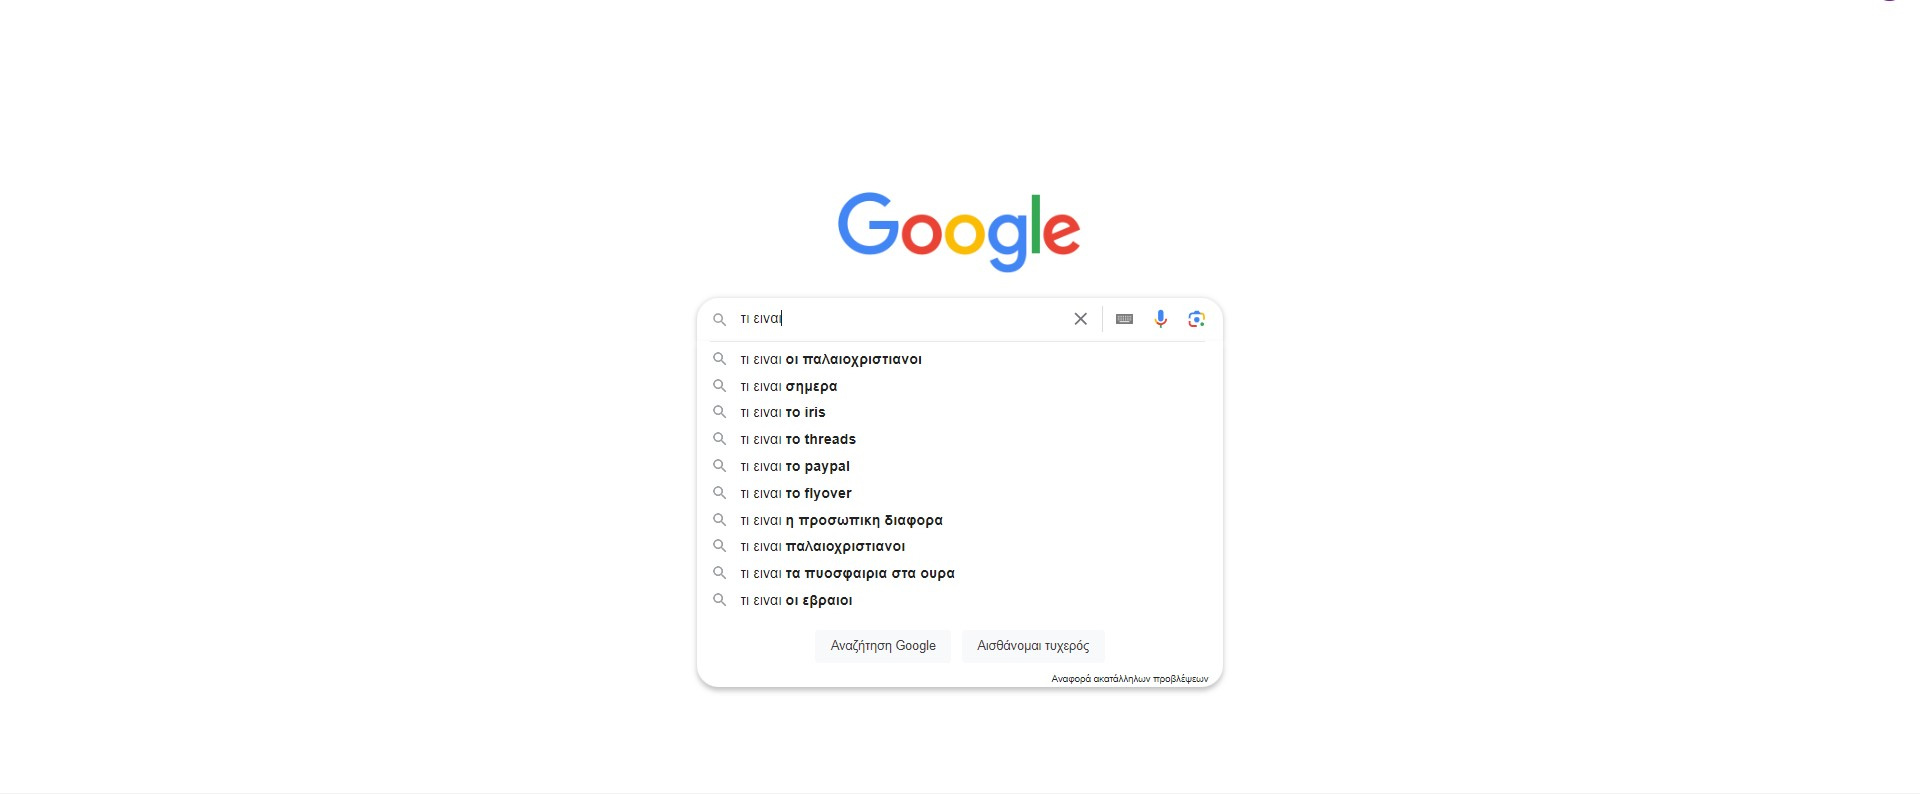 αναζήτηση google, με την αυτόματη συμπλήρωση να γράφει «τι είναι οι παλαιοχριστιανοί», μεταξύ άλλων